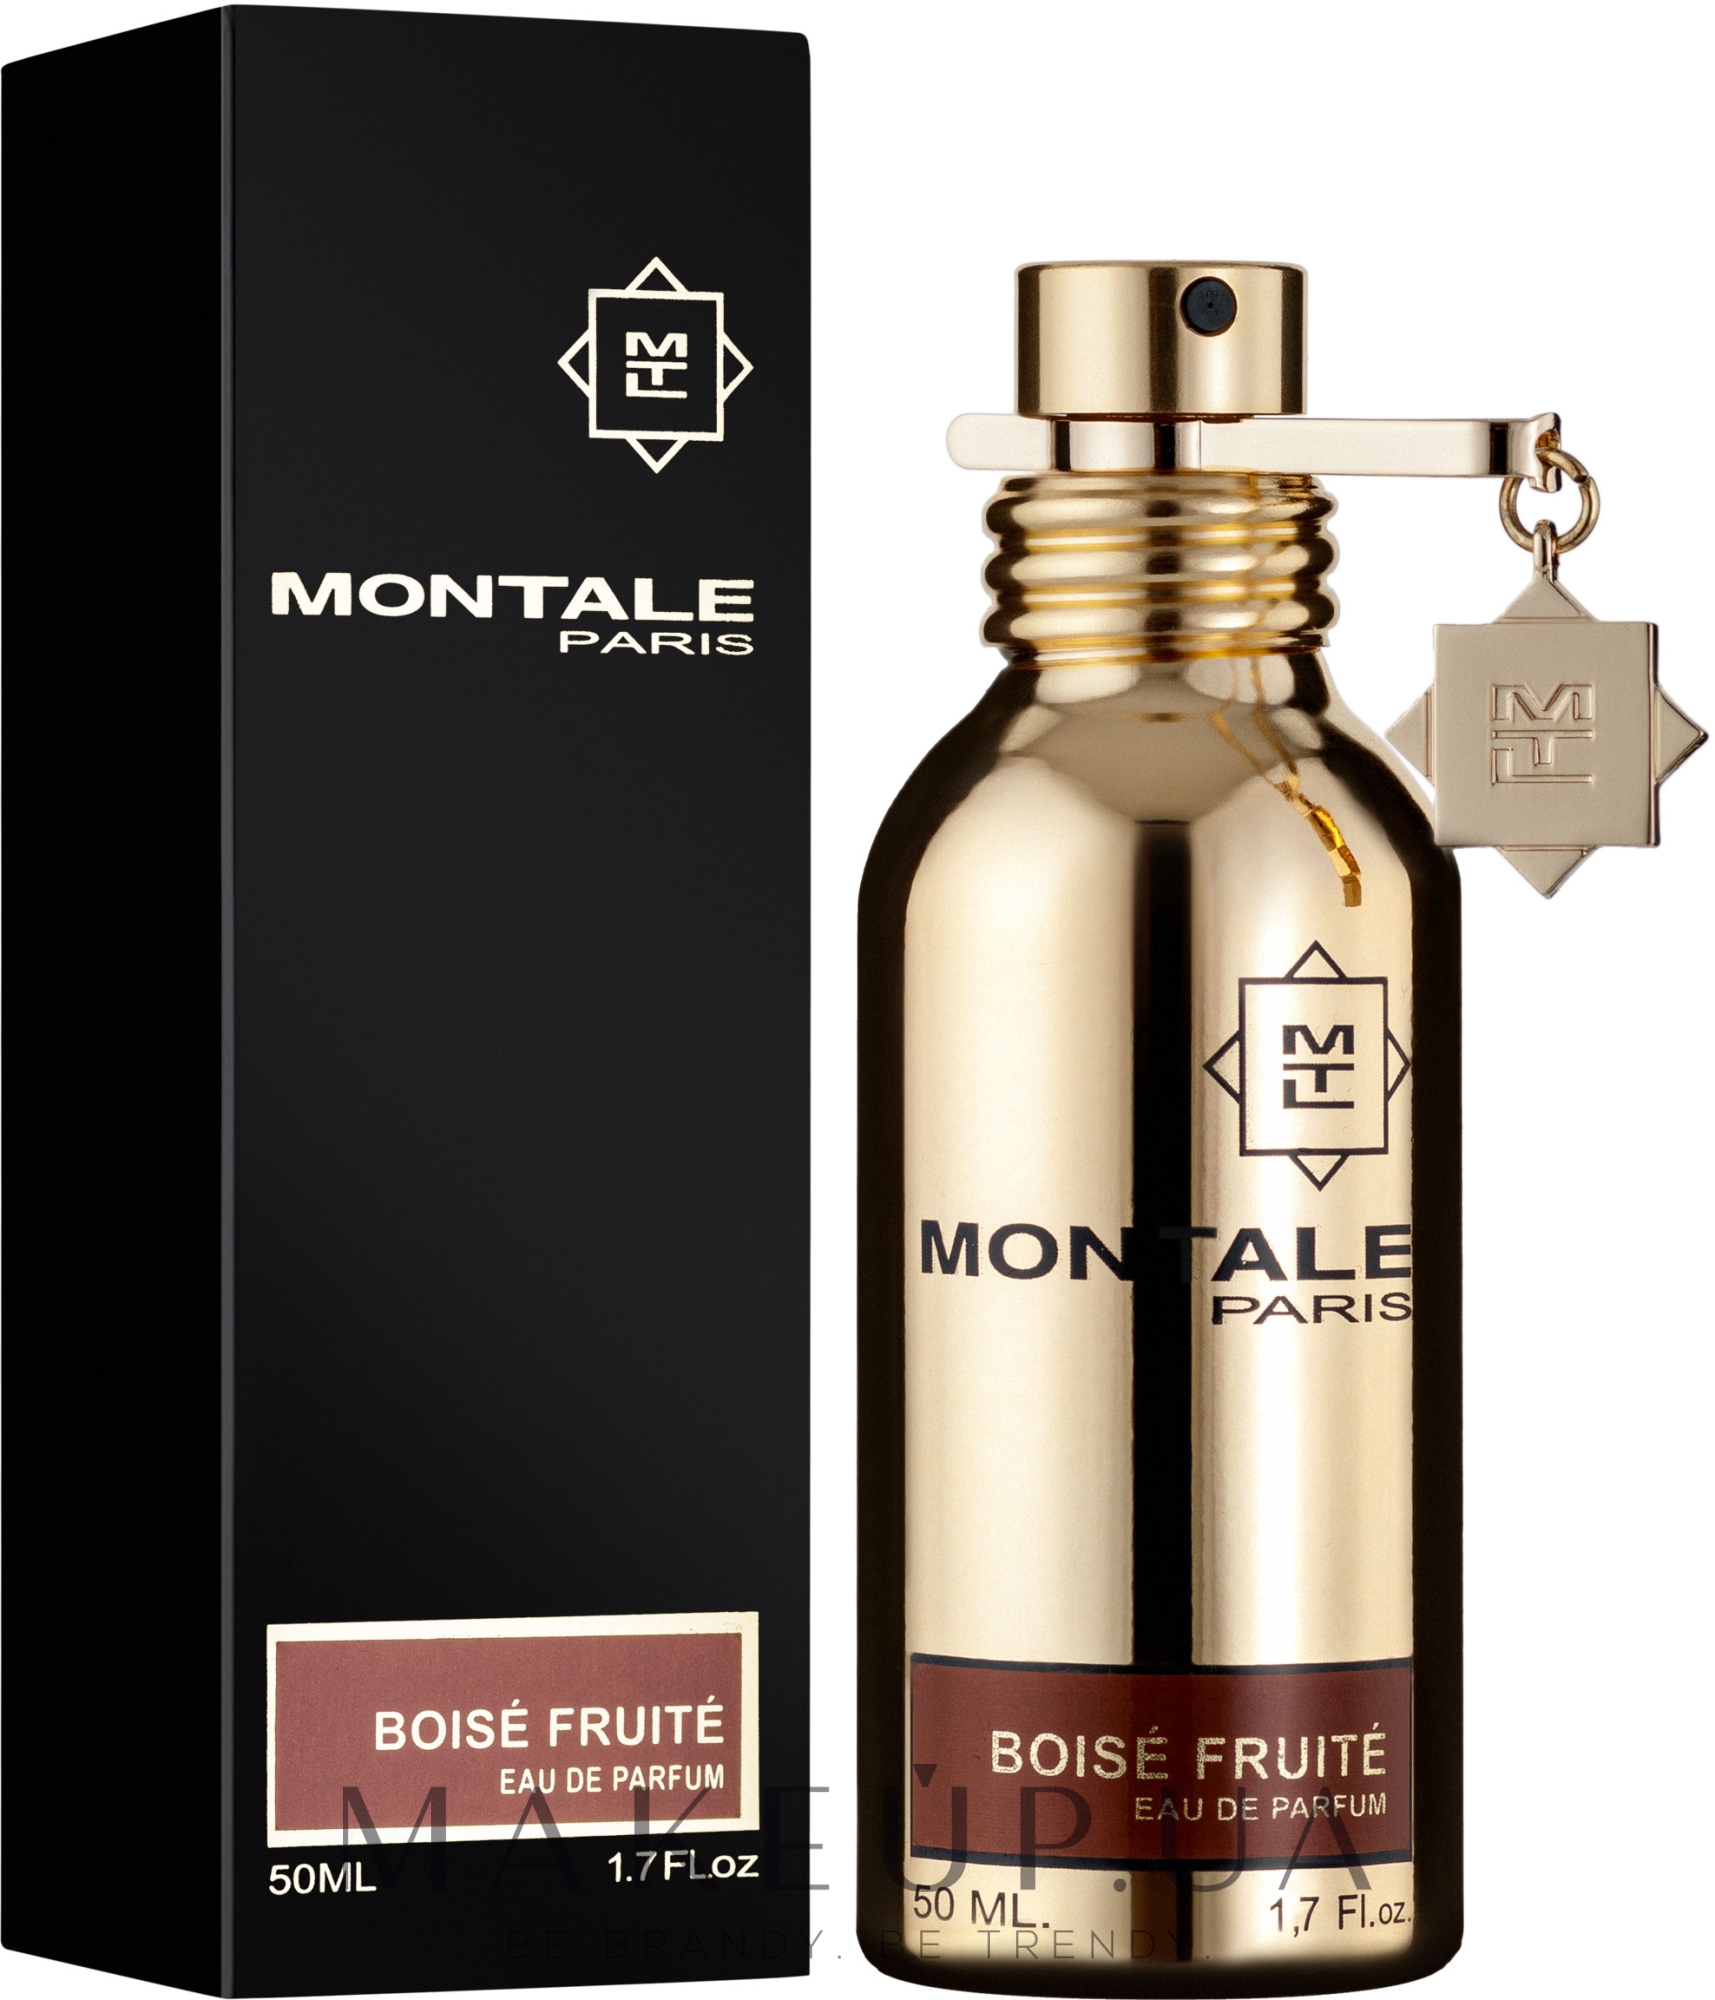 Montale boise. Montale Boise fruite. Montale Boise fruite описание. Парфюм с феромоном Montale Boise fruite 45 ml. Монталь крем для рук Boise крем.